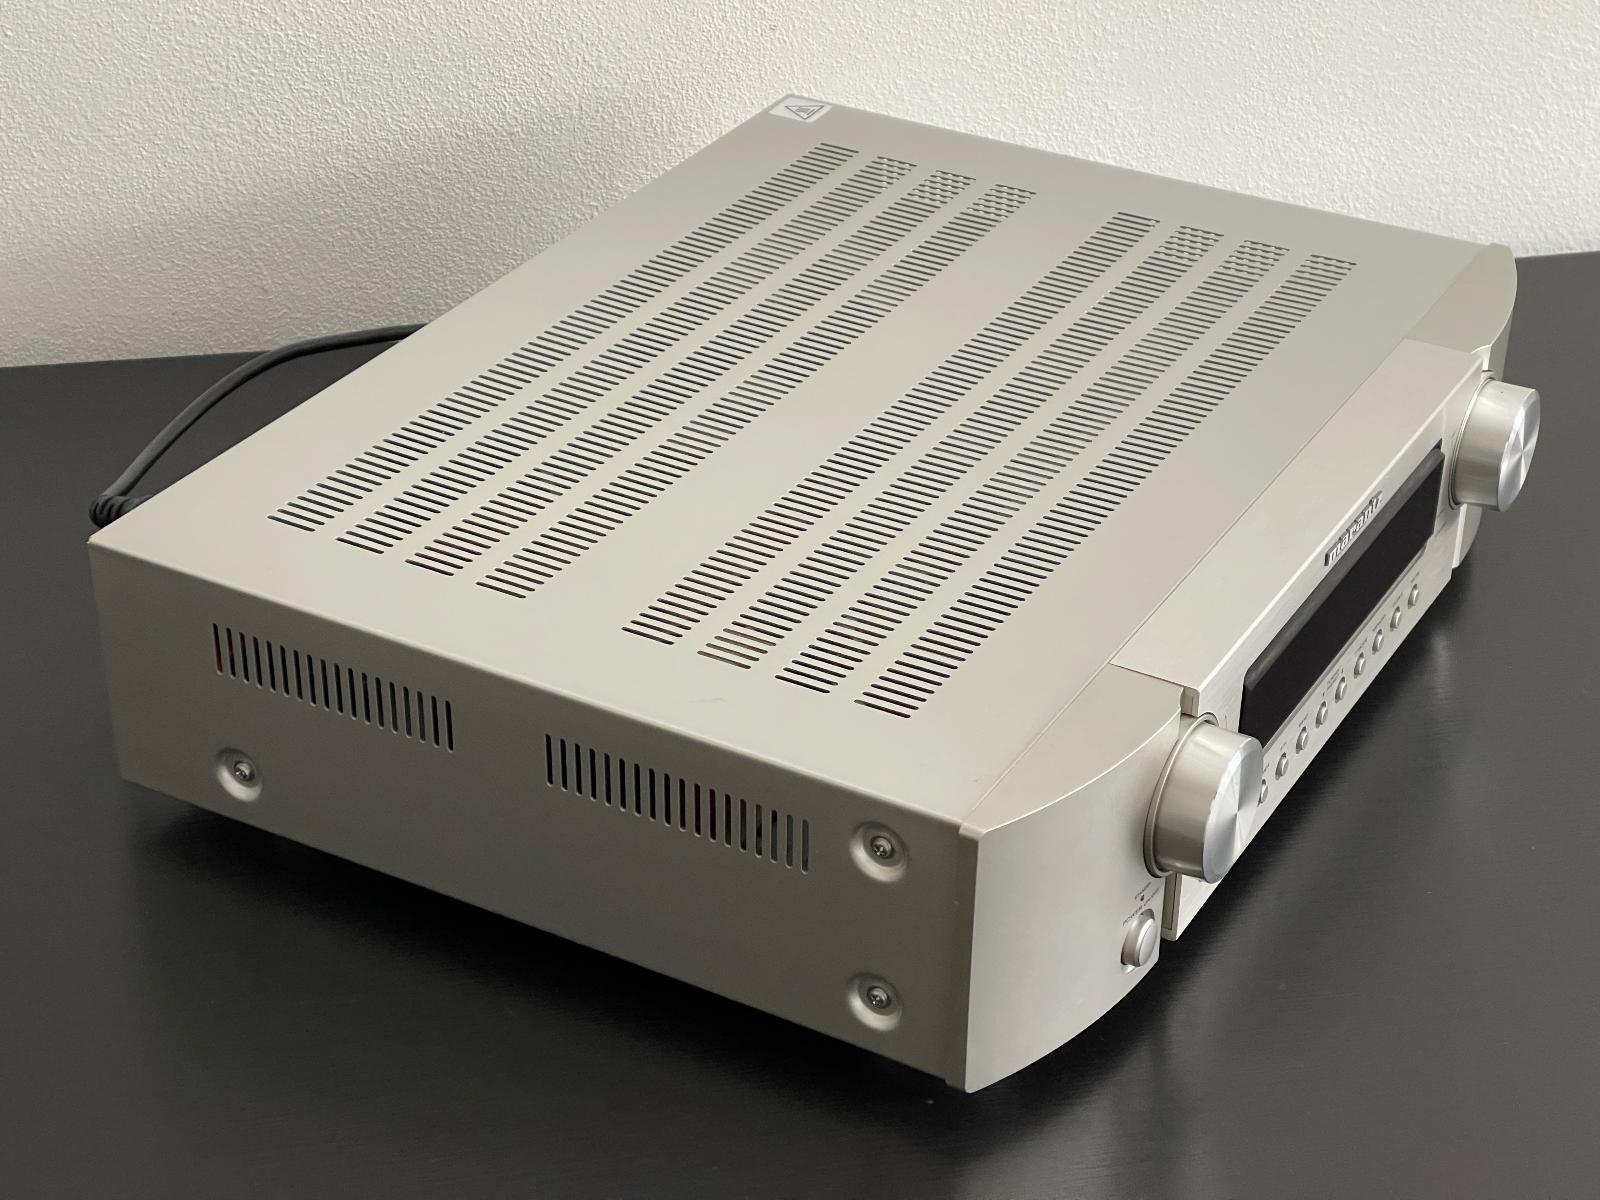 Stereo Receiver Zesilovač Marantz SR5023 + dálkové ovládání - TV, audio, video